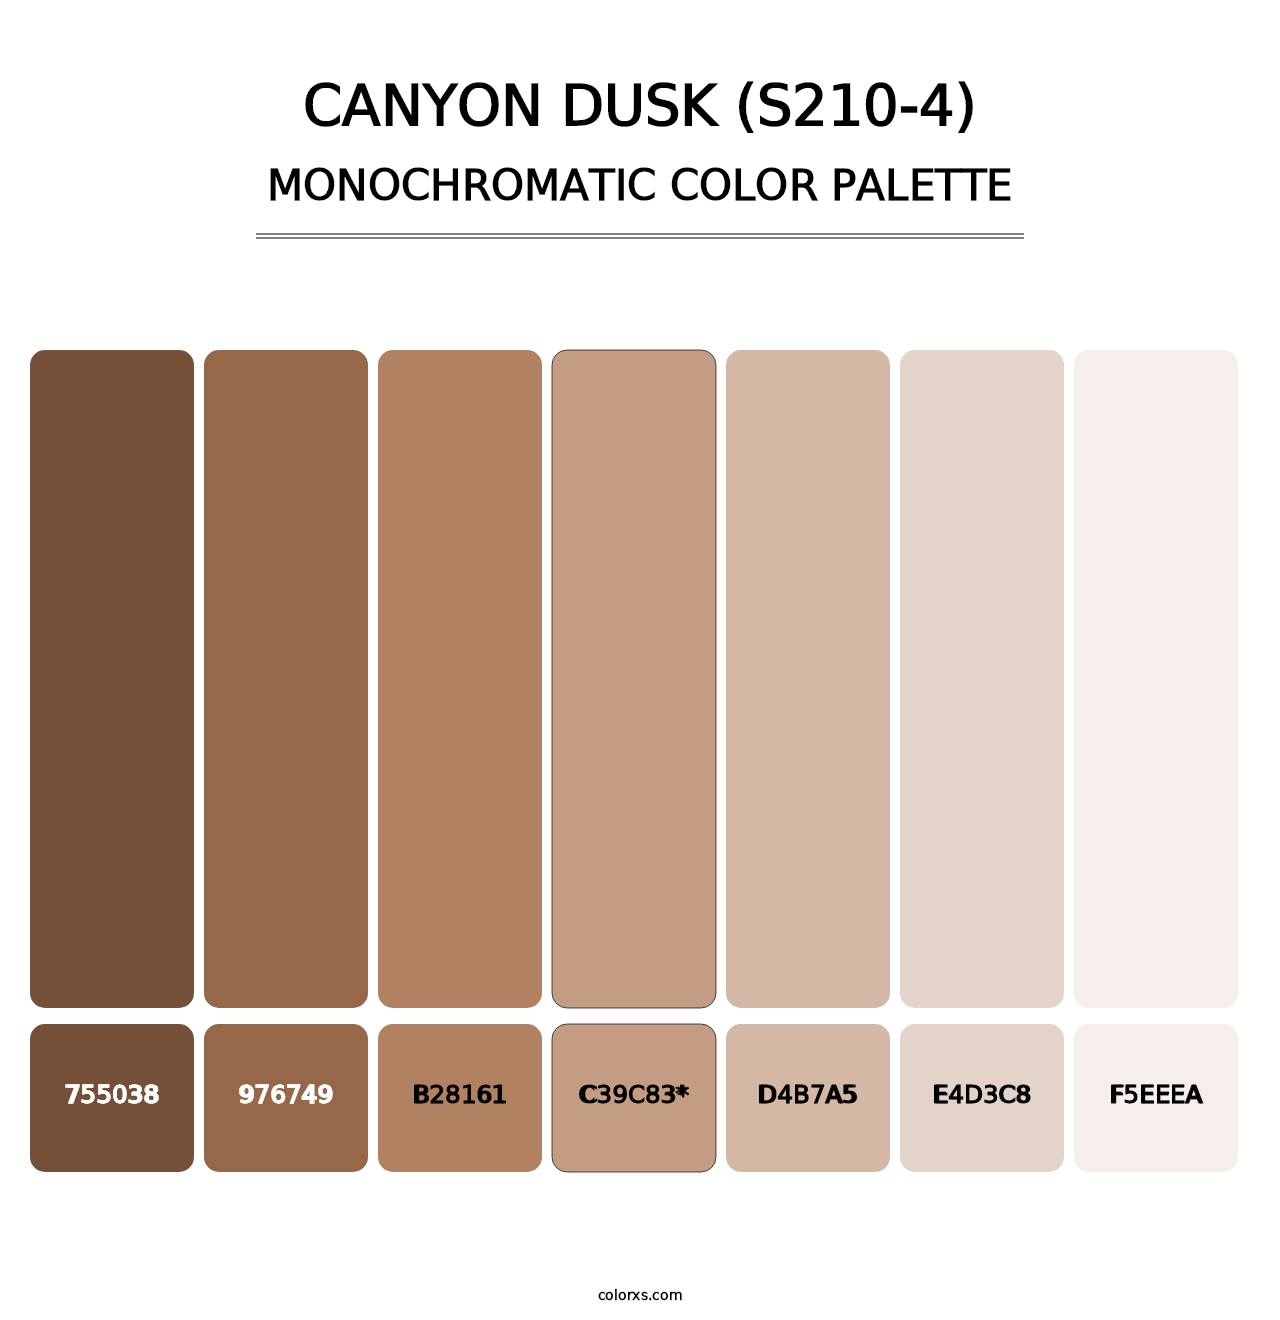 Canyon Dusk (S210-4) - Monochromatic Color Palette